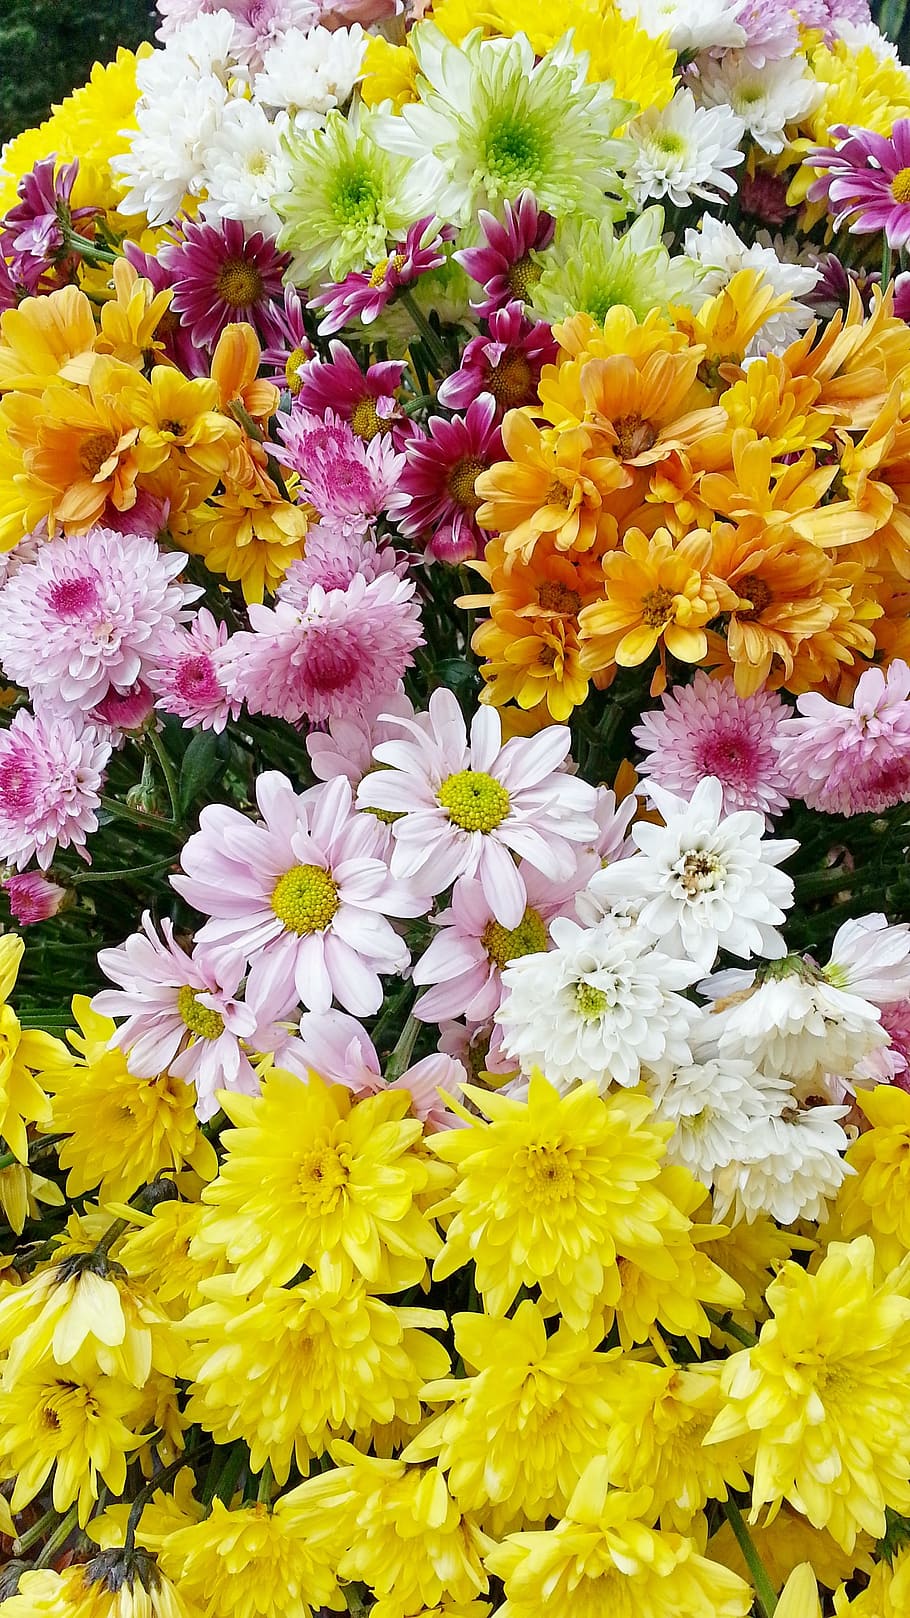 꽃, 아름다운 꽃, 정원 꽃, 노란 꽃, 자연, 여름 꽃, 식물, 꽃밭, 야생의 꽃, 들판의 꽃